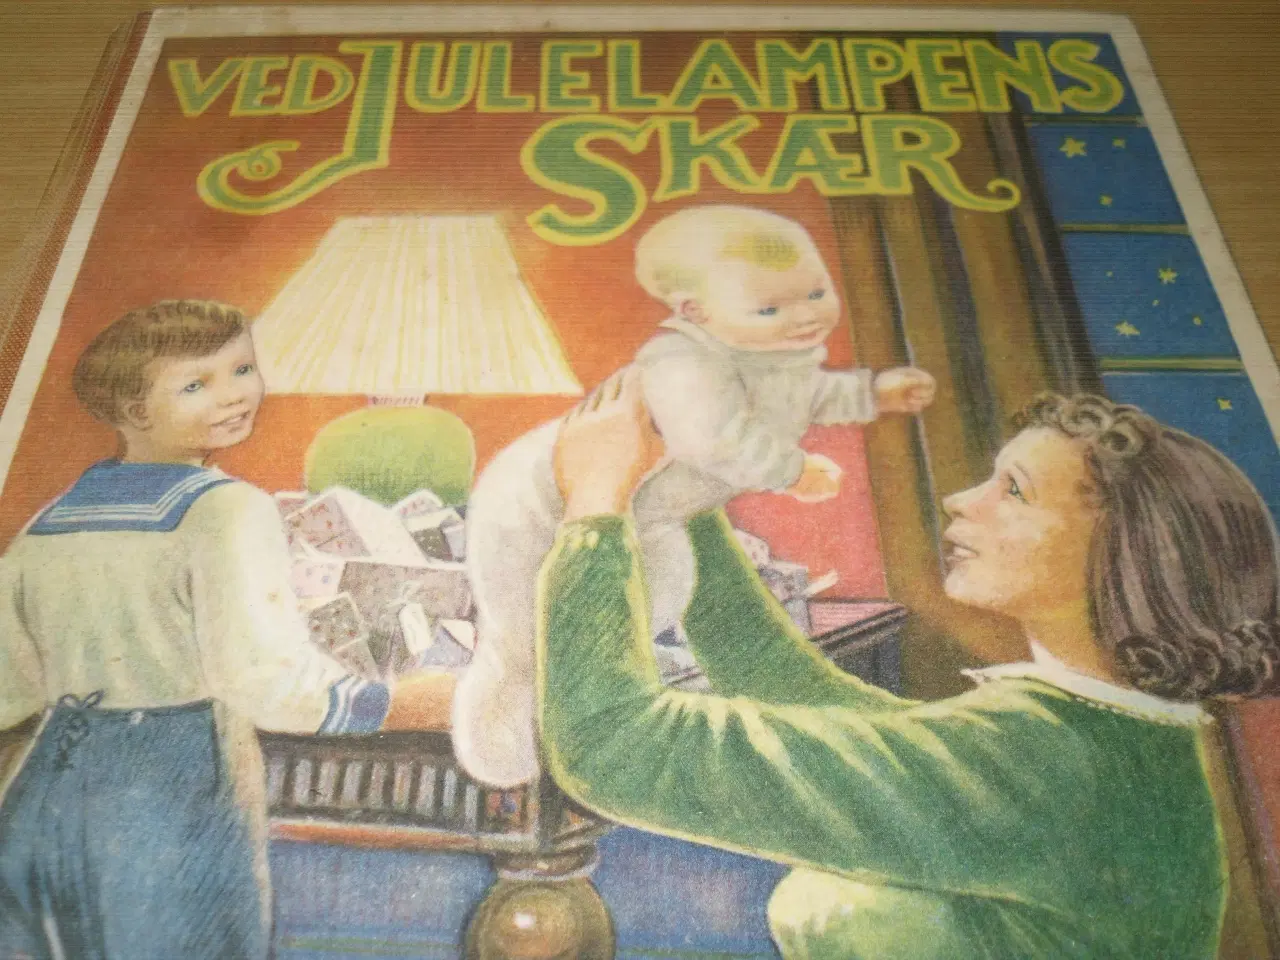 Billede 1 - Ved JULELAMPENS Skær 1949.